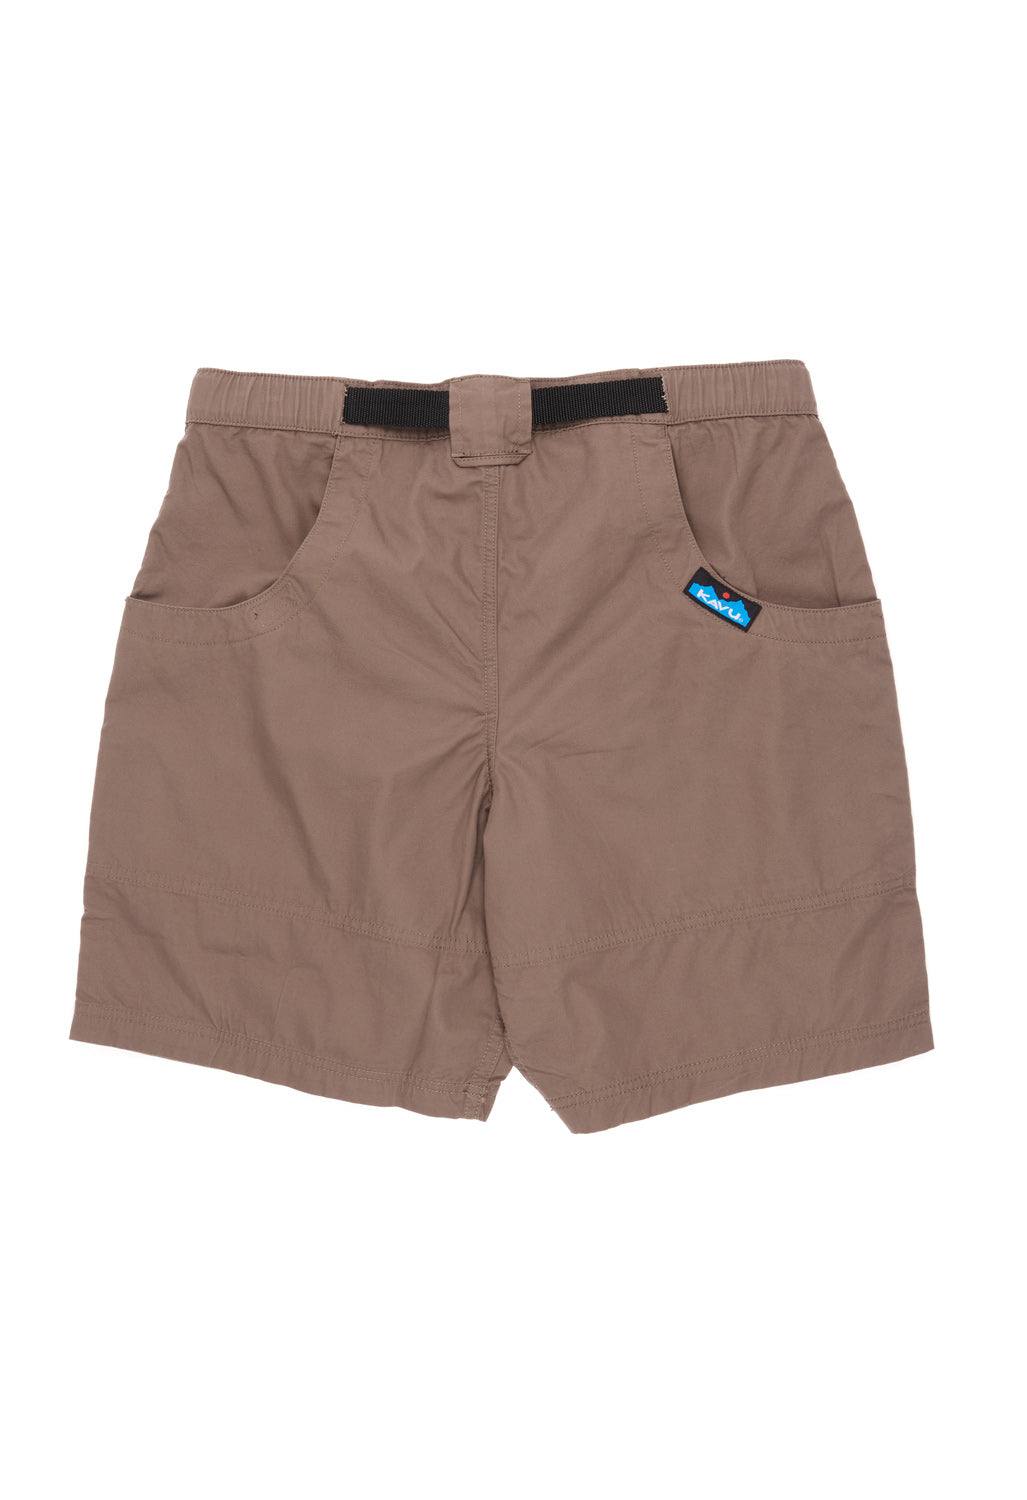 KAVU Men's Chilli Lite Shorts - Walnut